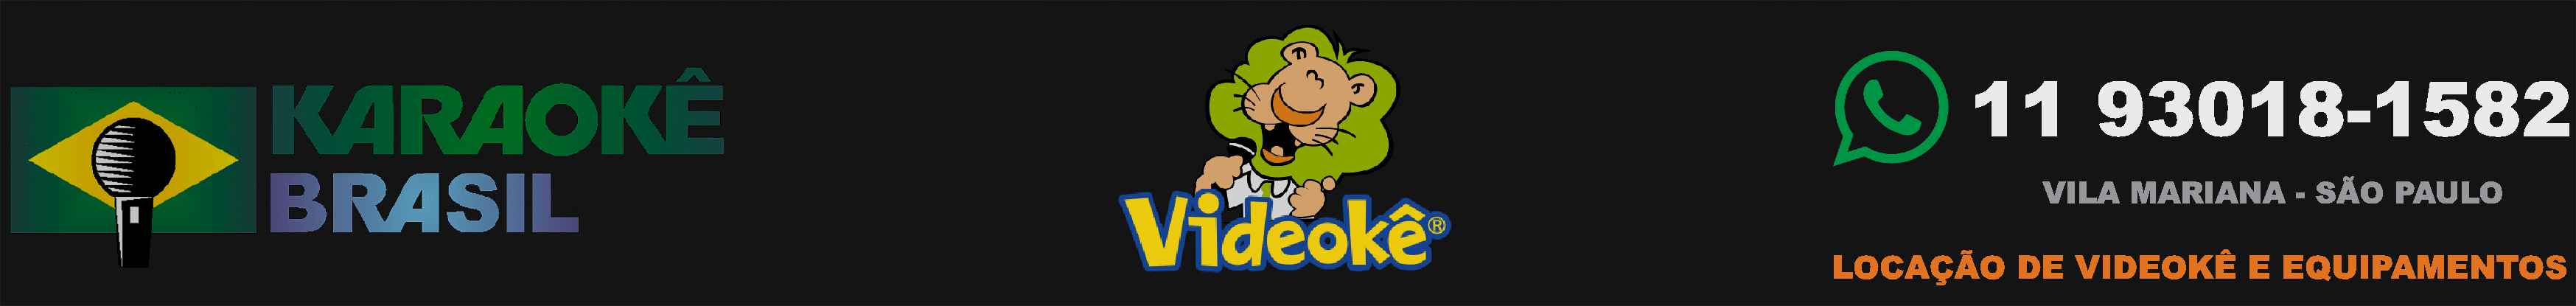 LISTA SITE VIDEOKE - POR MÚSICA - FEV09 - Karaoke Brasil